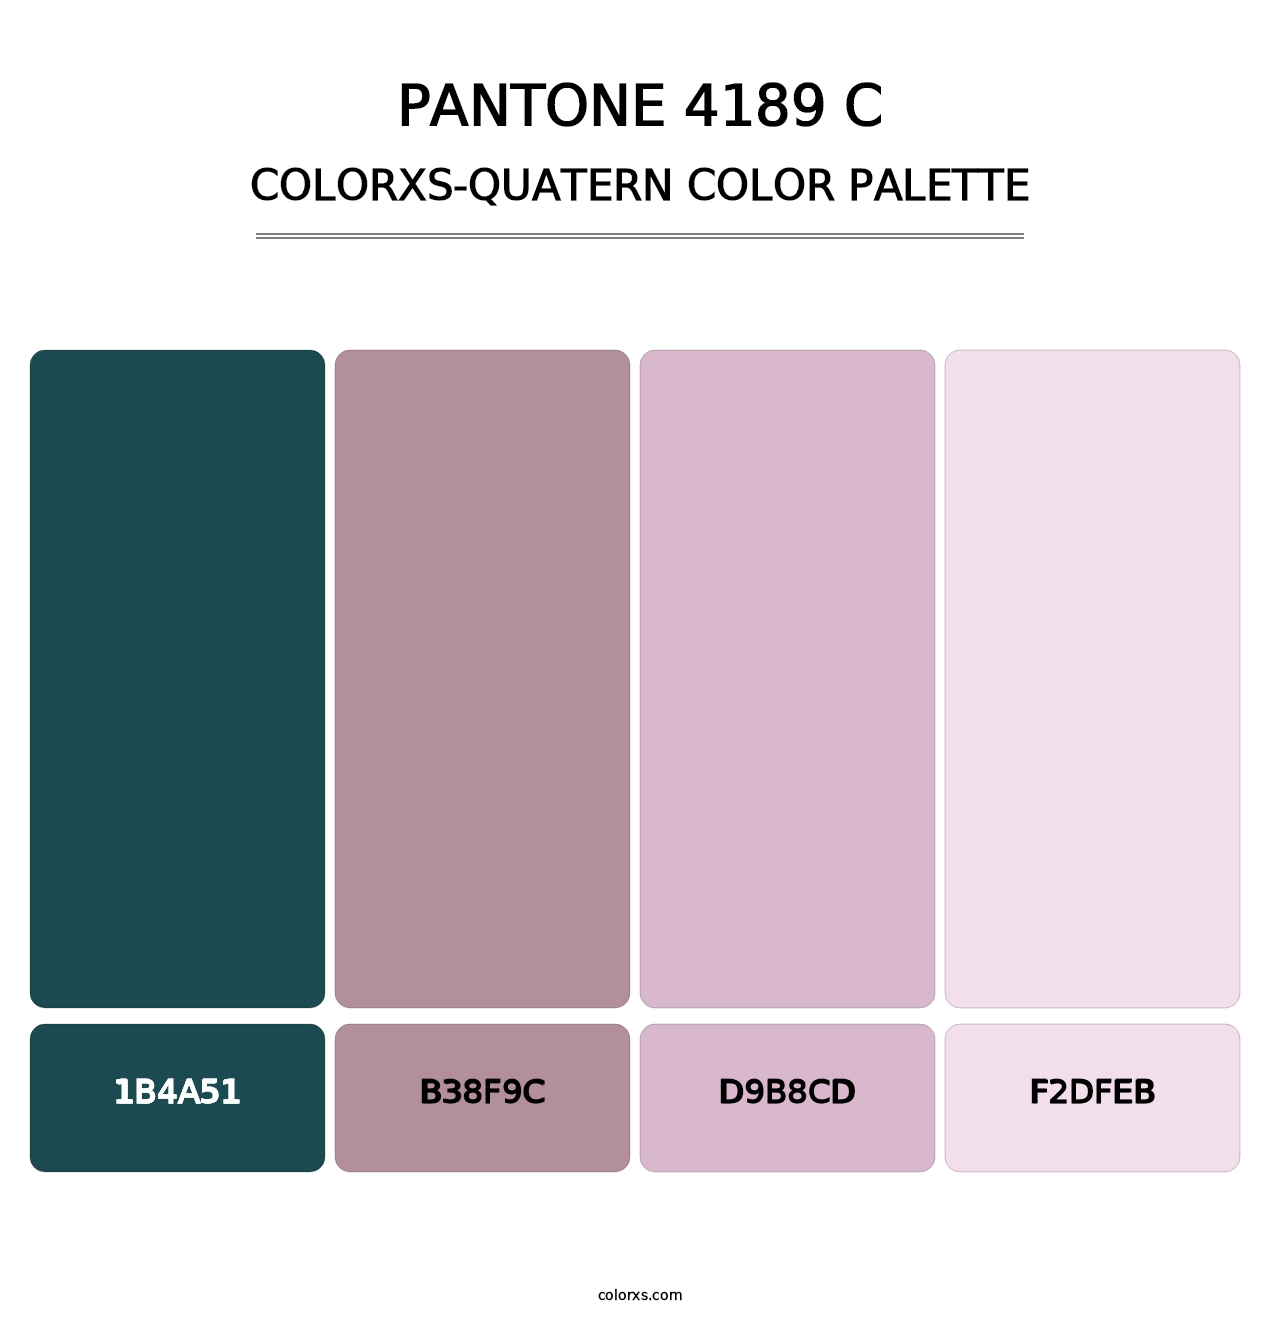 PANTONE 4189 C - Colorxs Quatern Palette